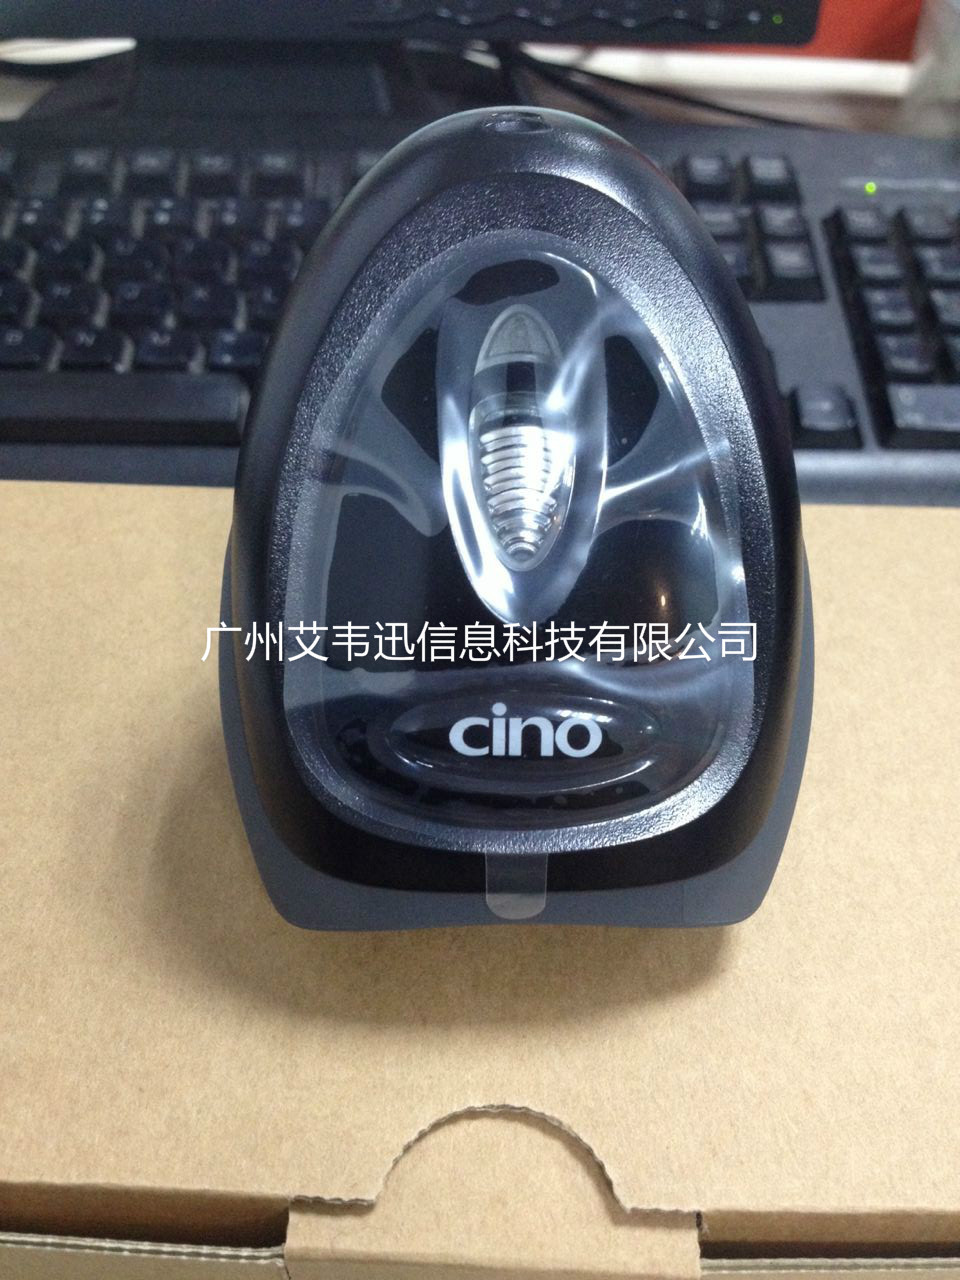 CINO扫描器L680一维激光加影像式扫描枪助力珠海某商业有限公司